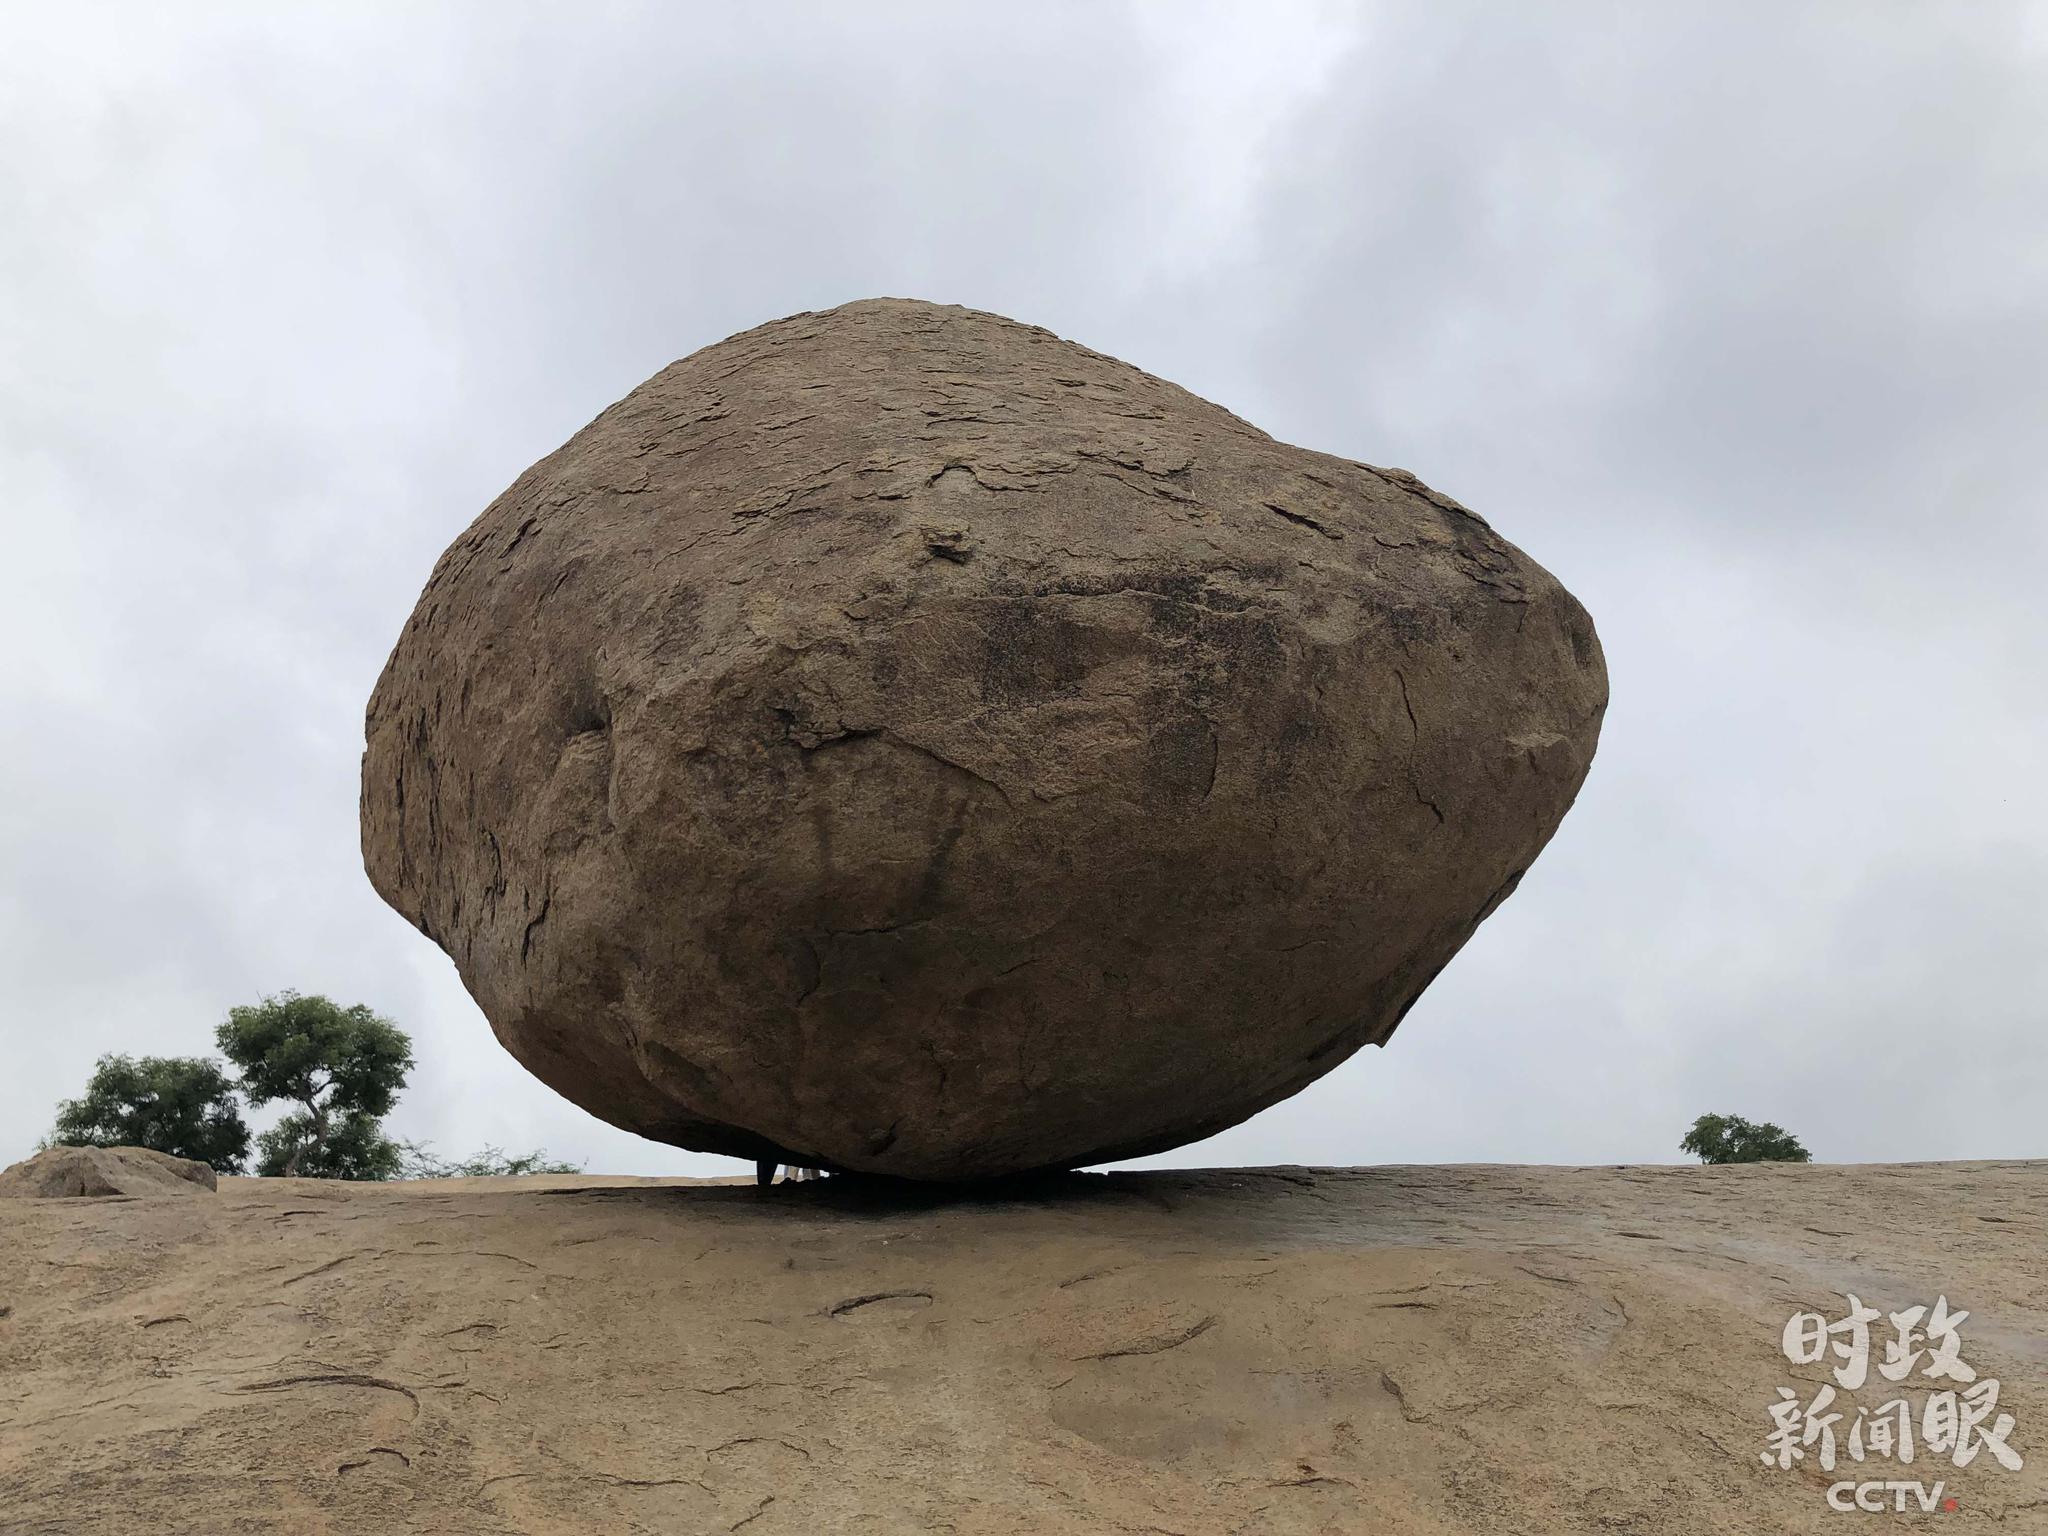 △克里希纳巨石。位于阿周那石雕附近的堤岸，高约6米，直径约5米，重约250吨。（央视记者马亚阳拍摄）